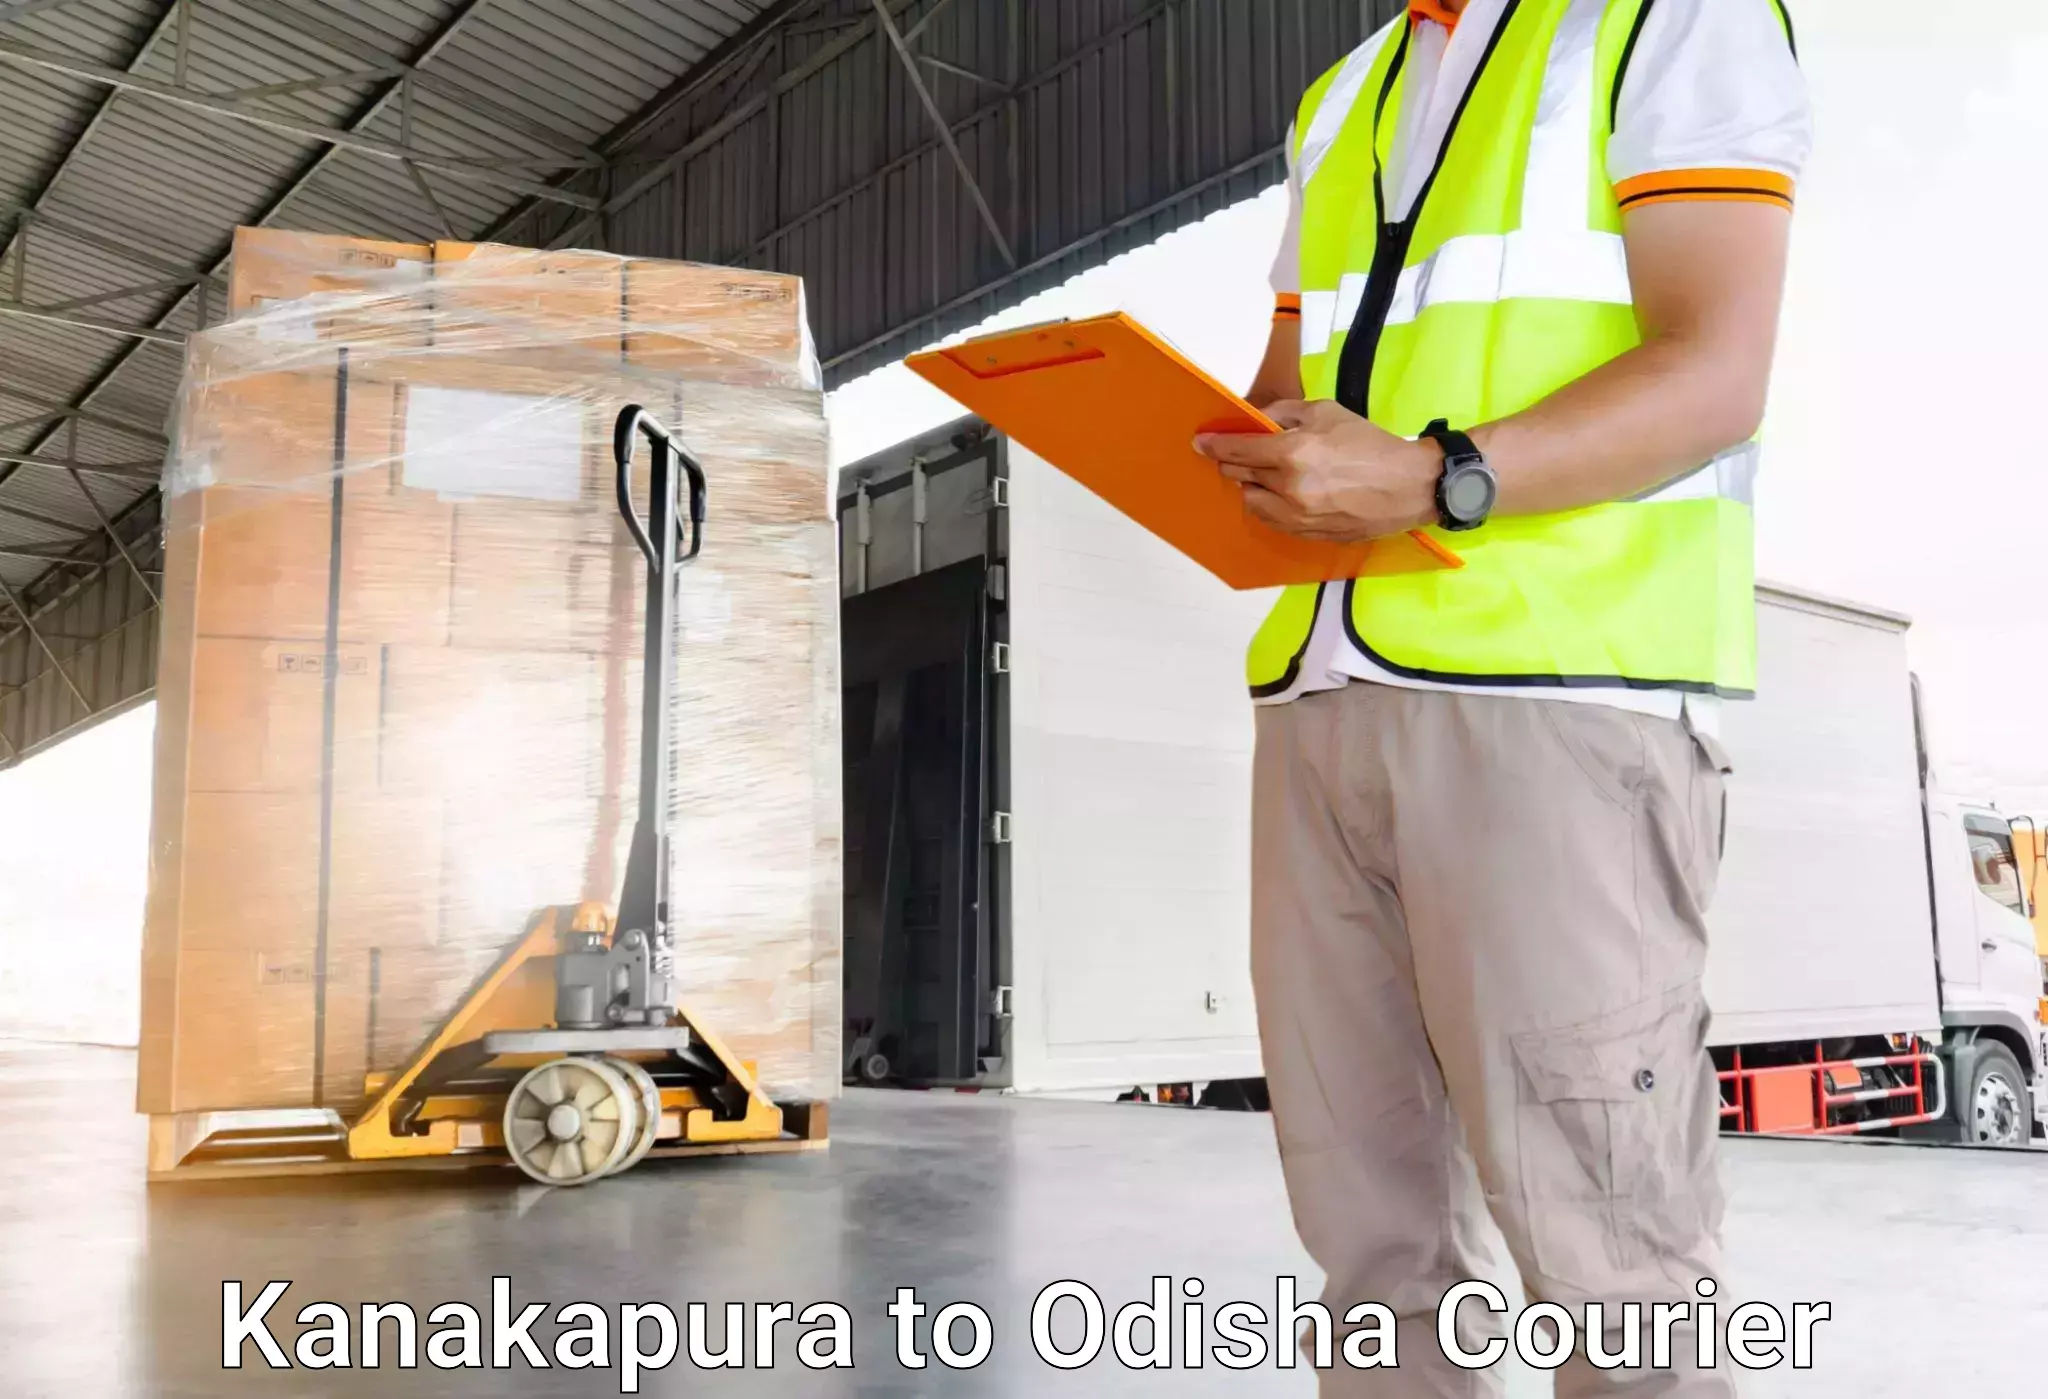 Luggage delivery operations Kanakapura to Ukhunda